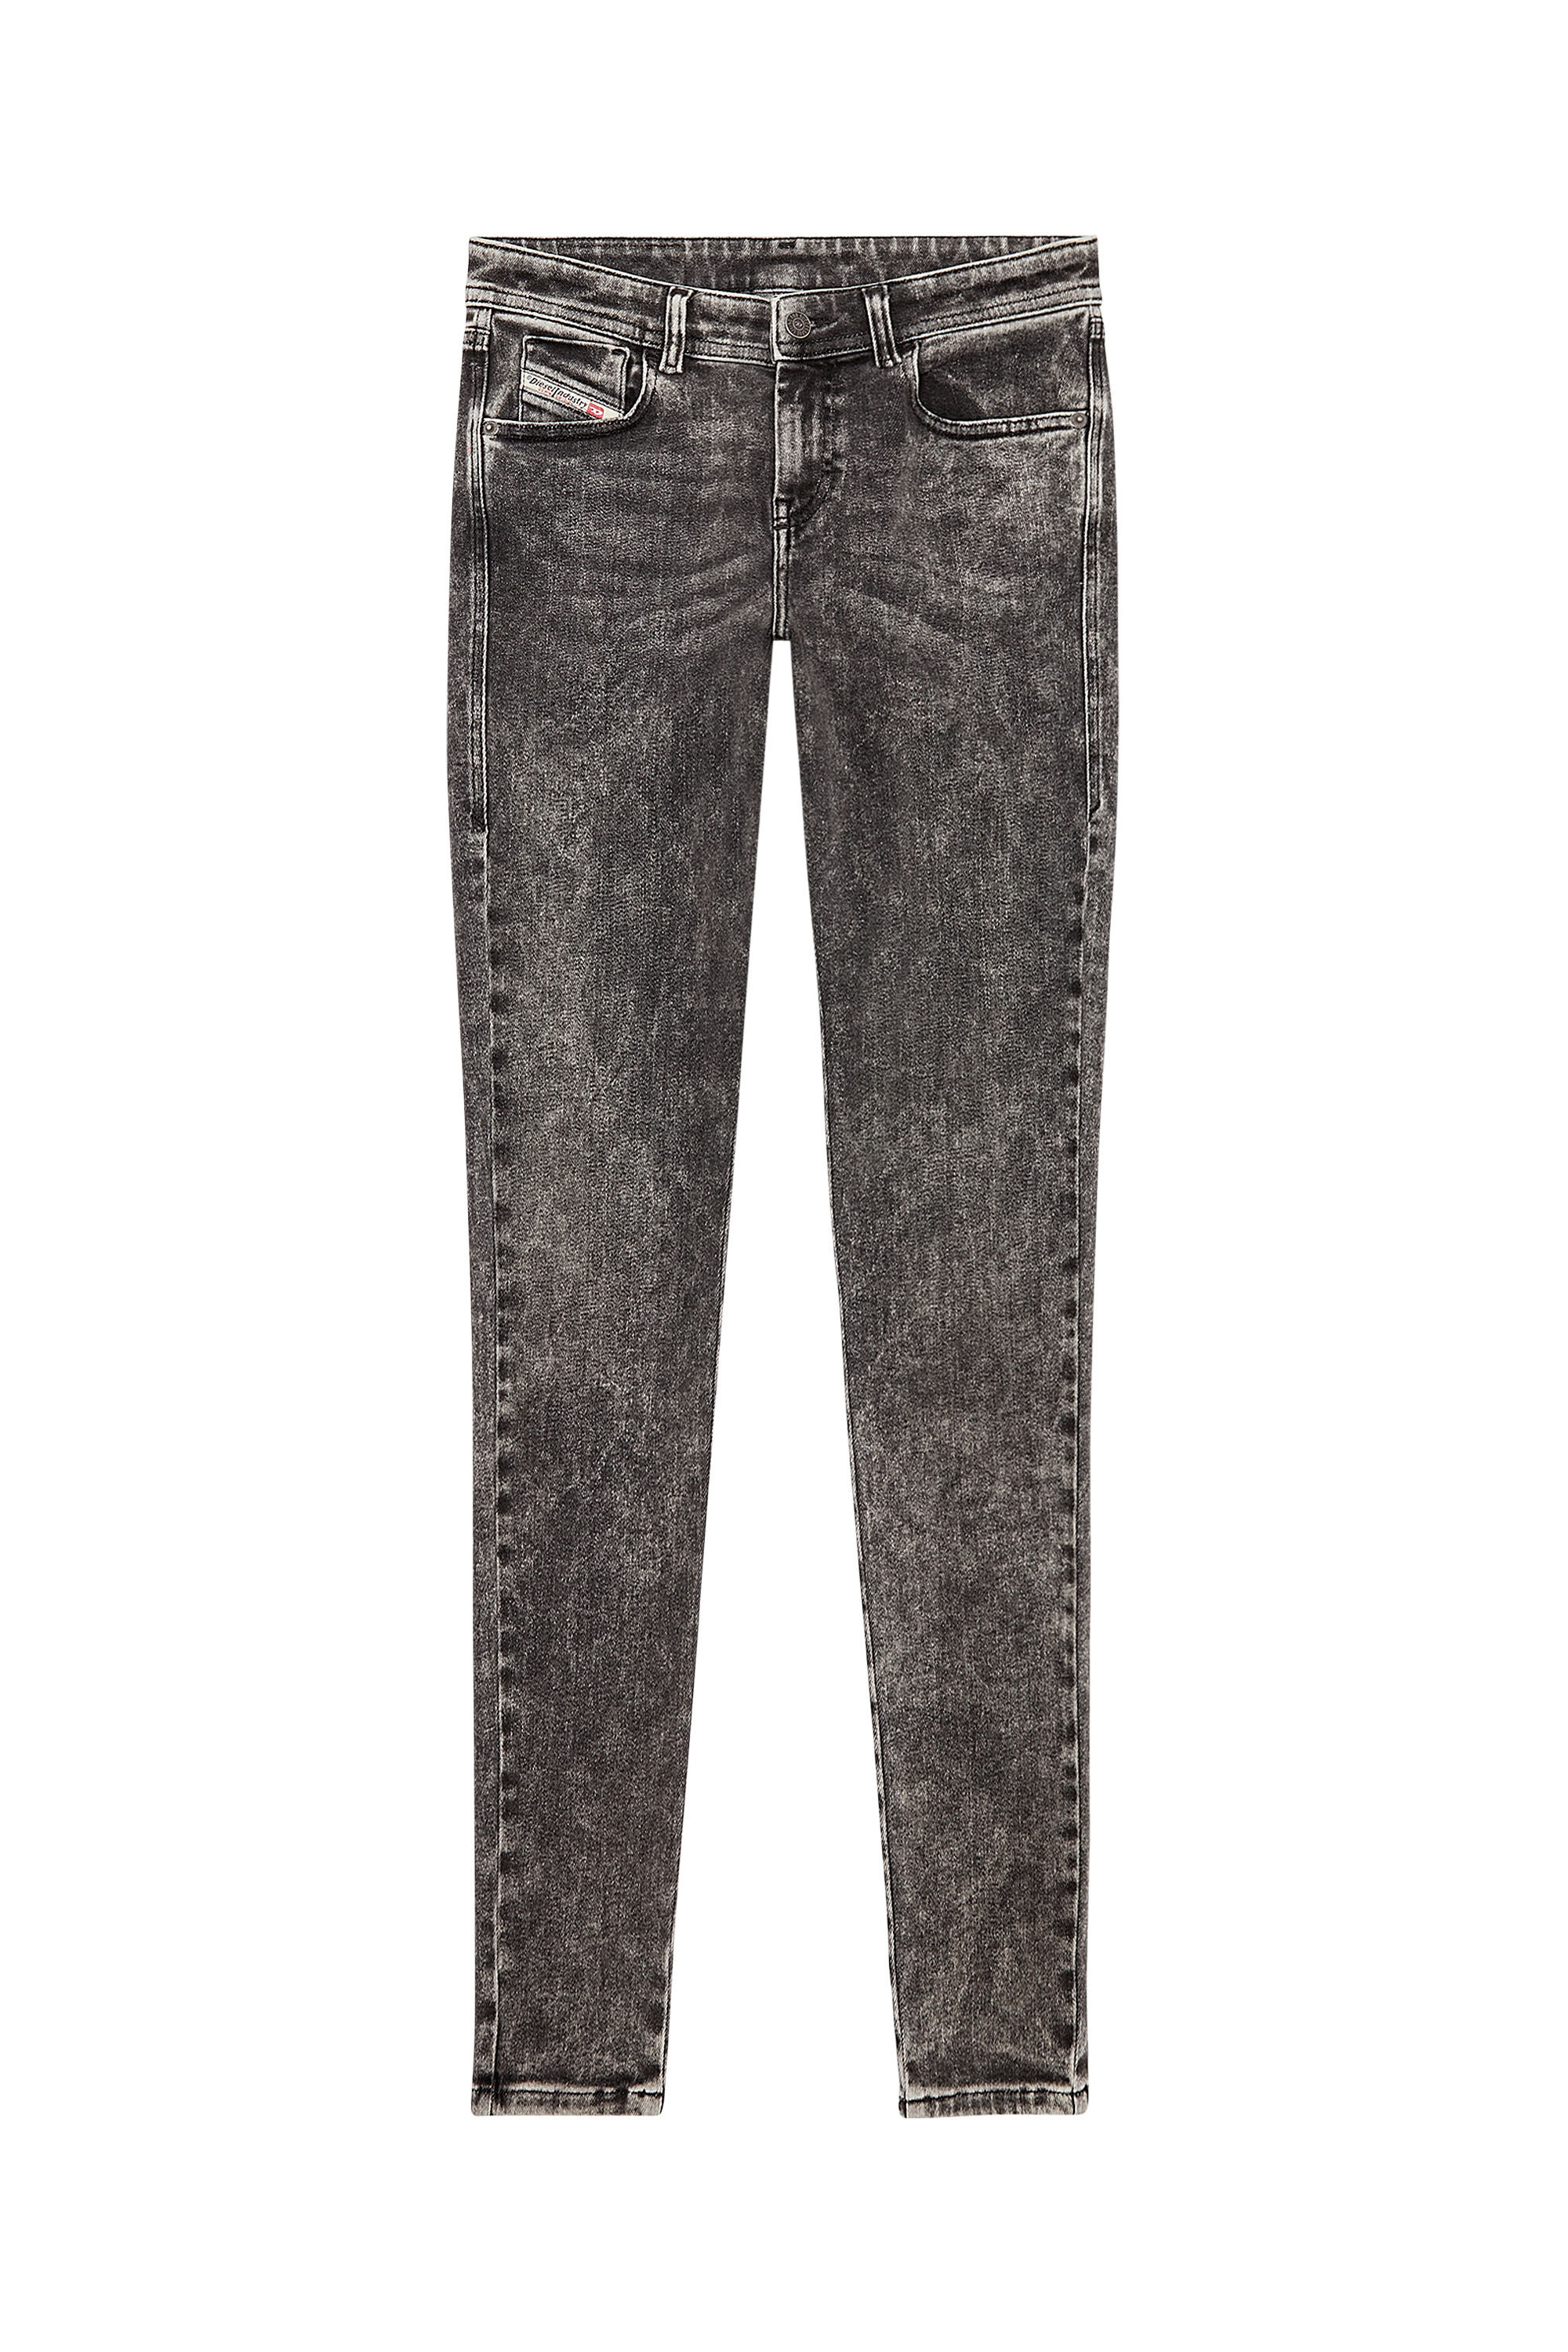 Diesel - Super skinny Jeans 2017 Slandy 09F80, Black/Dark grey - Image 2